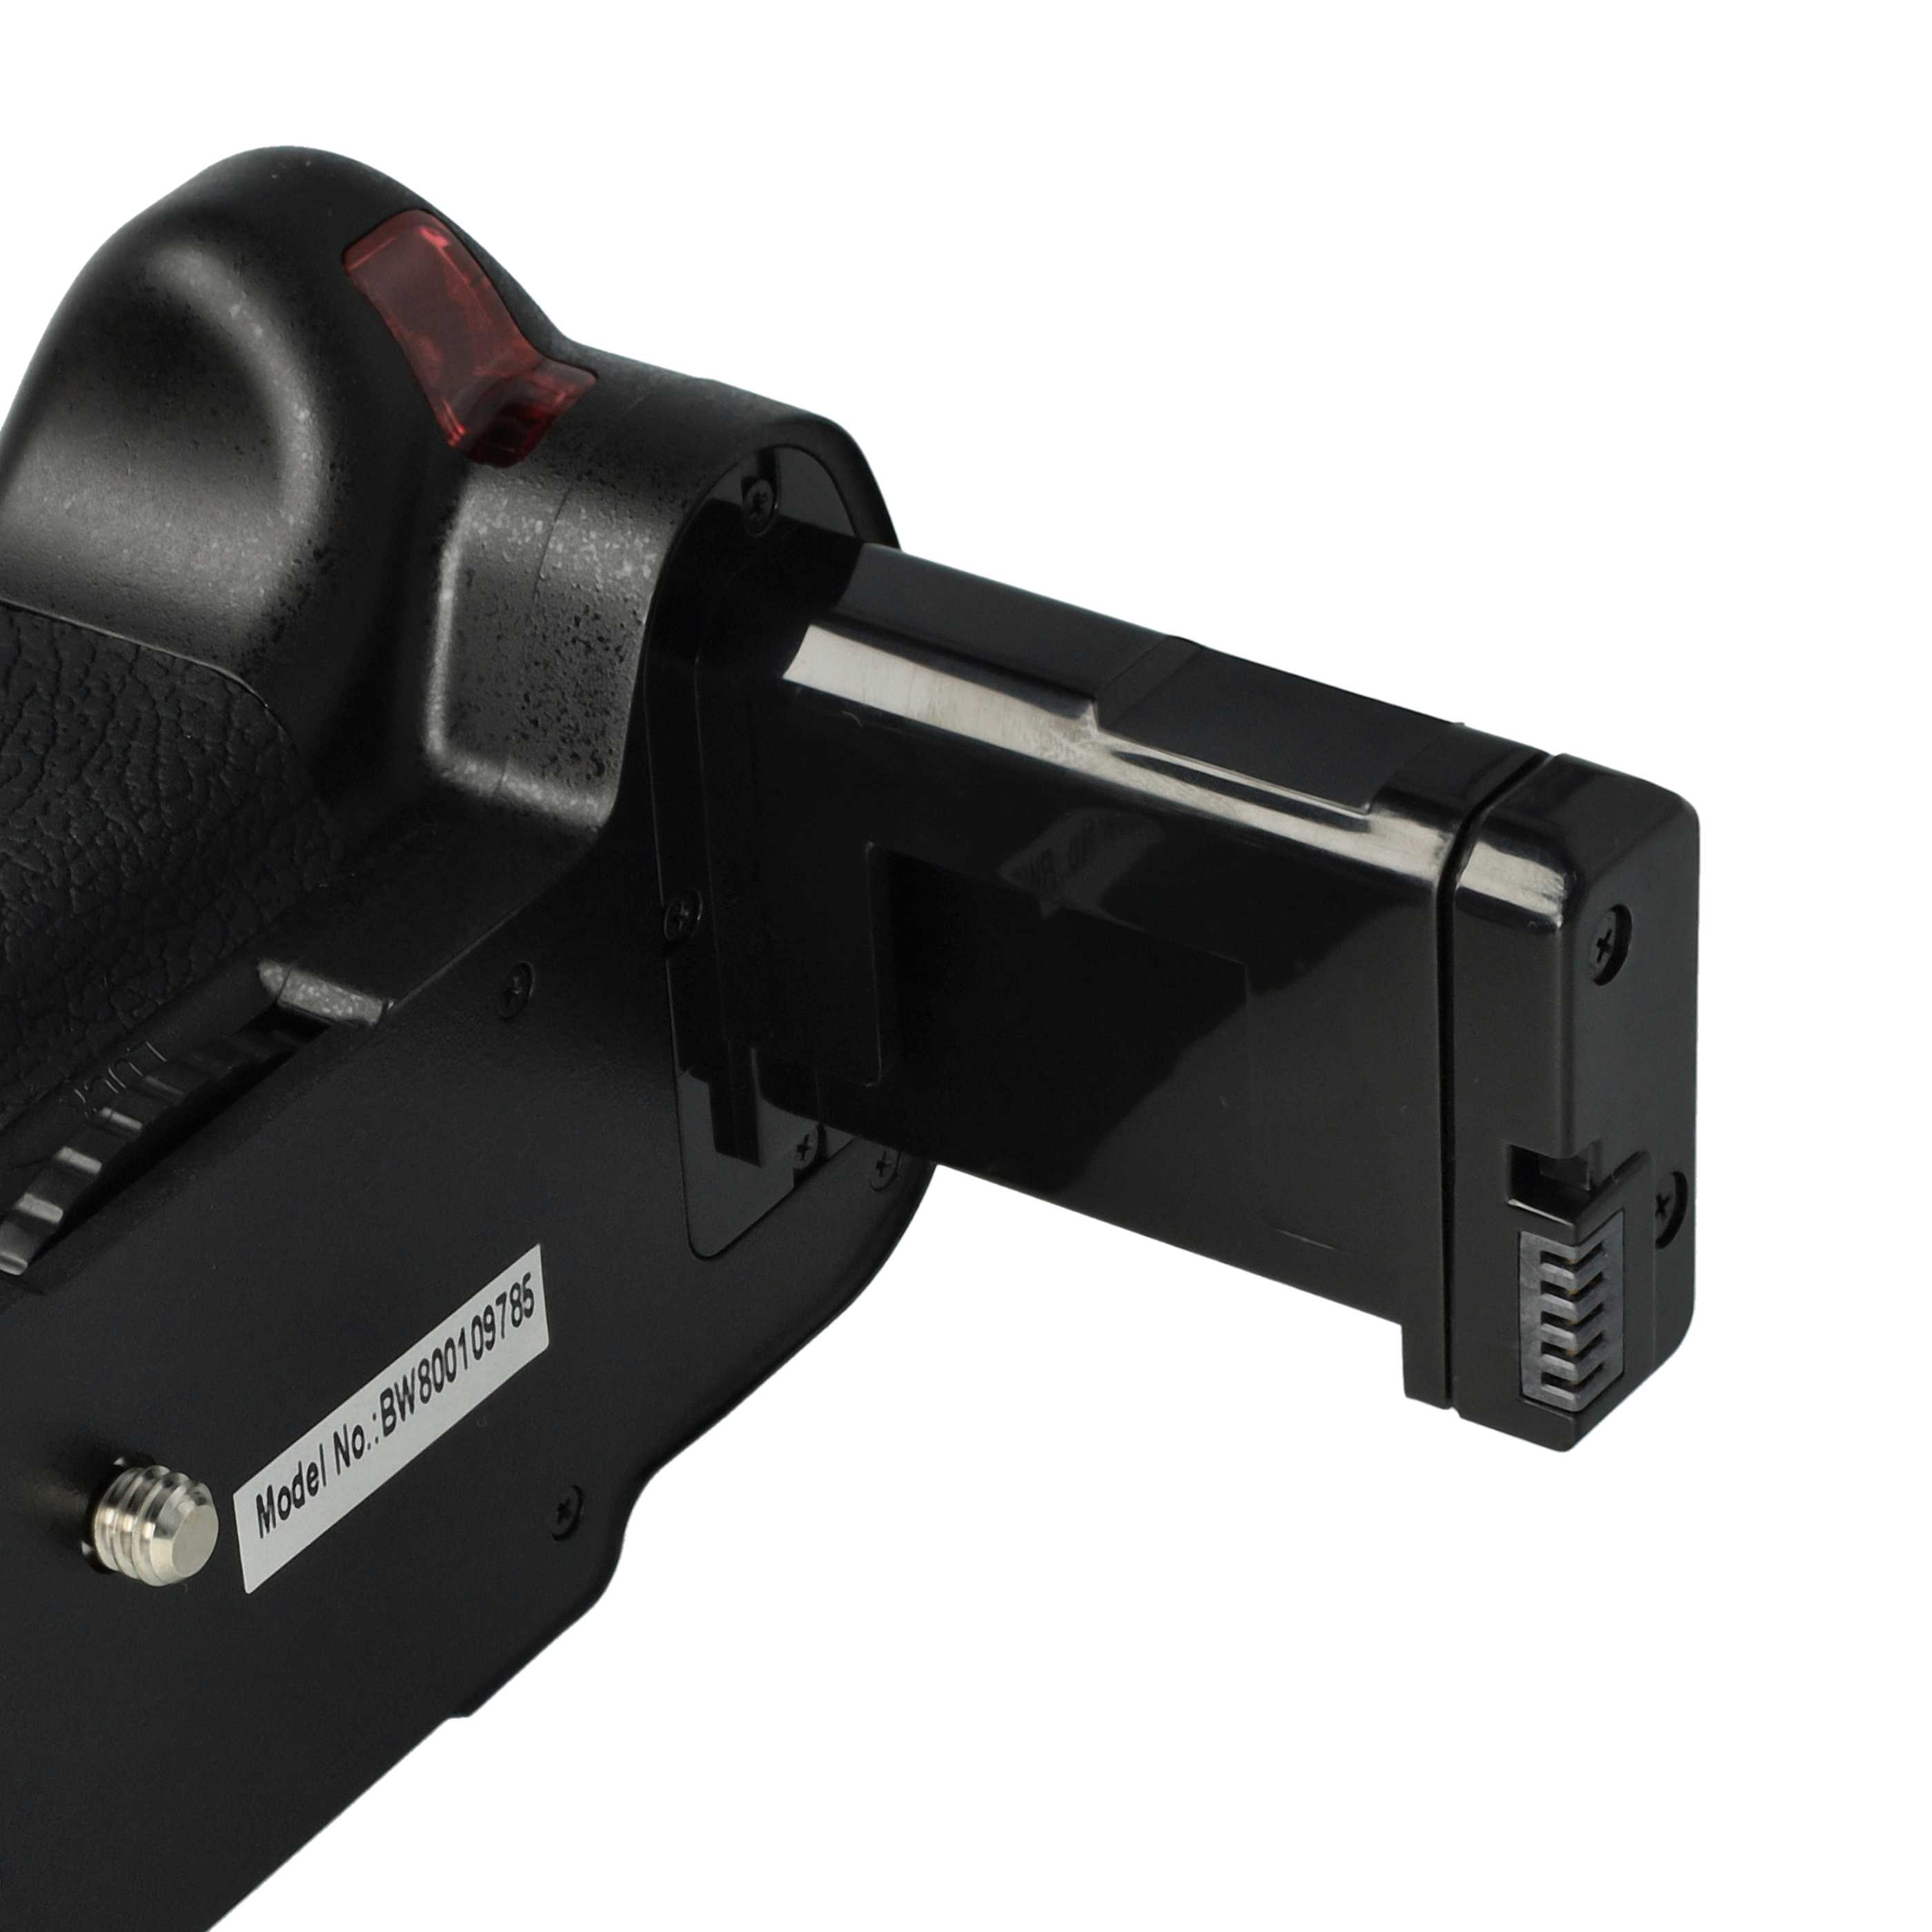 Batterie grip pour appareil photo Nikon D5100, D5200, D5300 - avec molette, déclencheur 